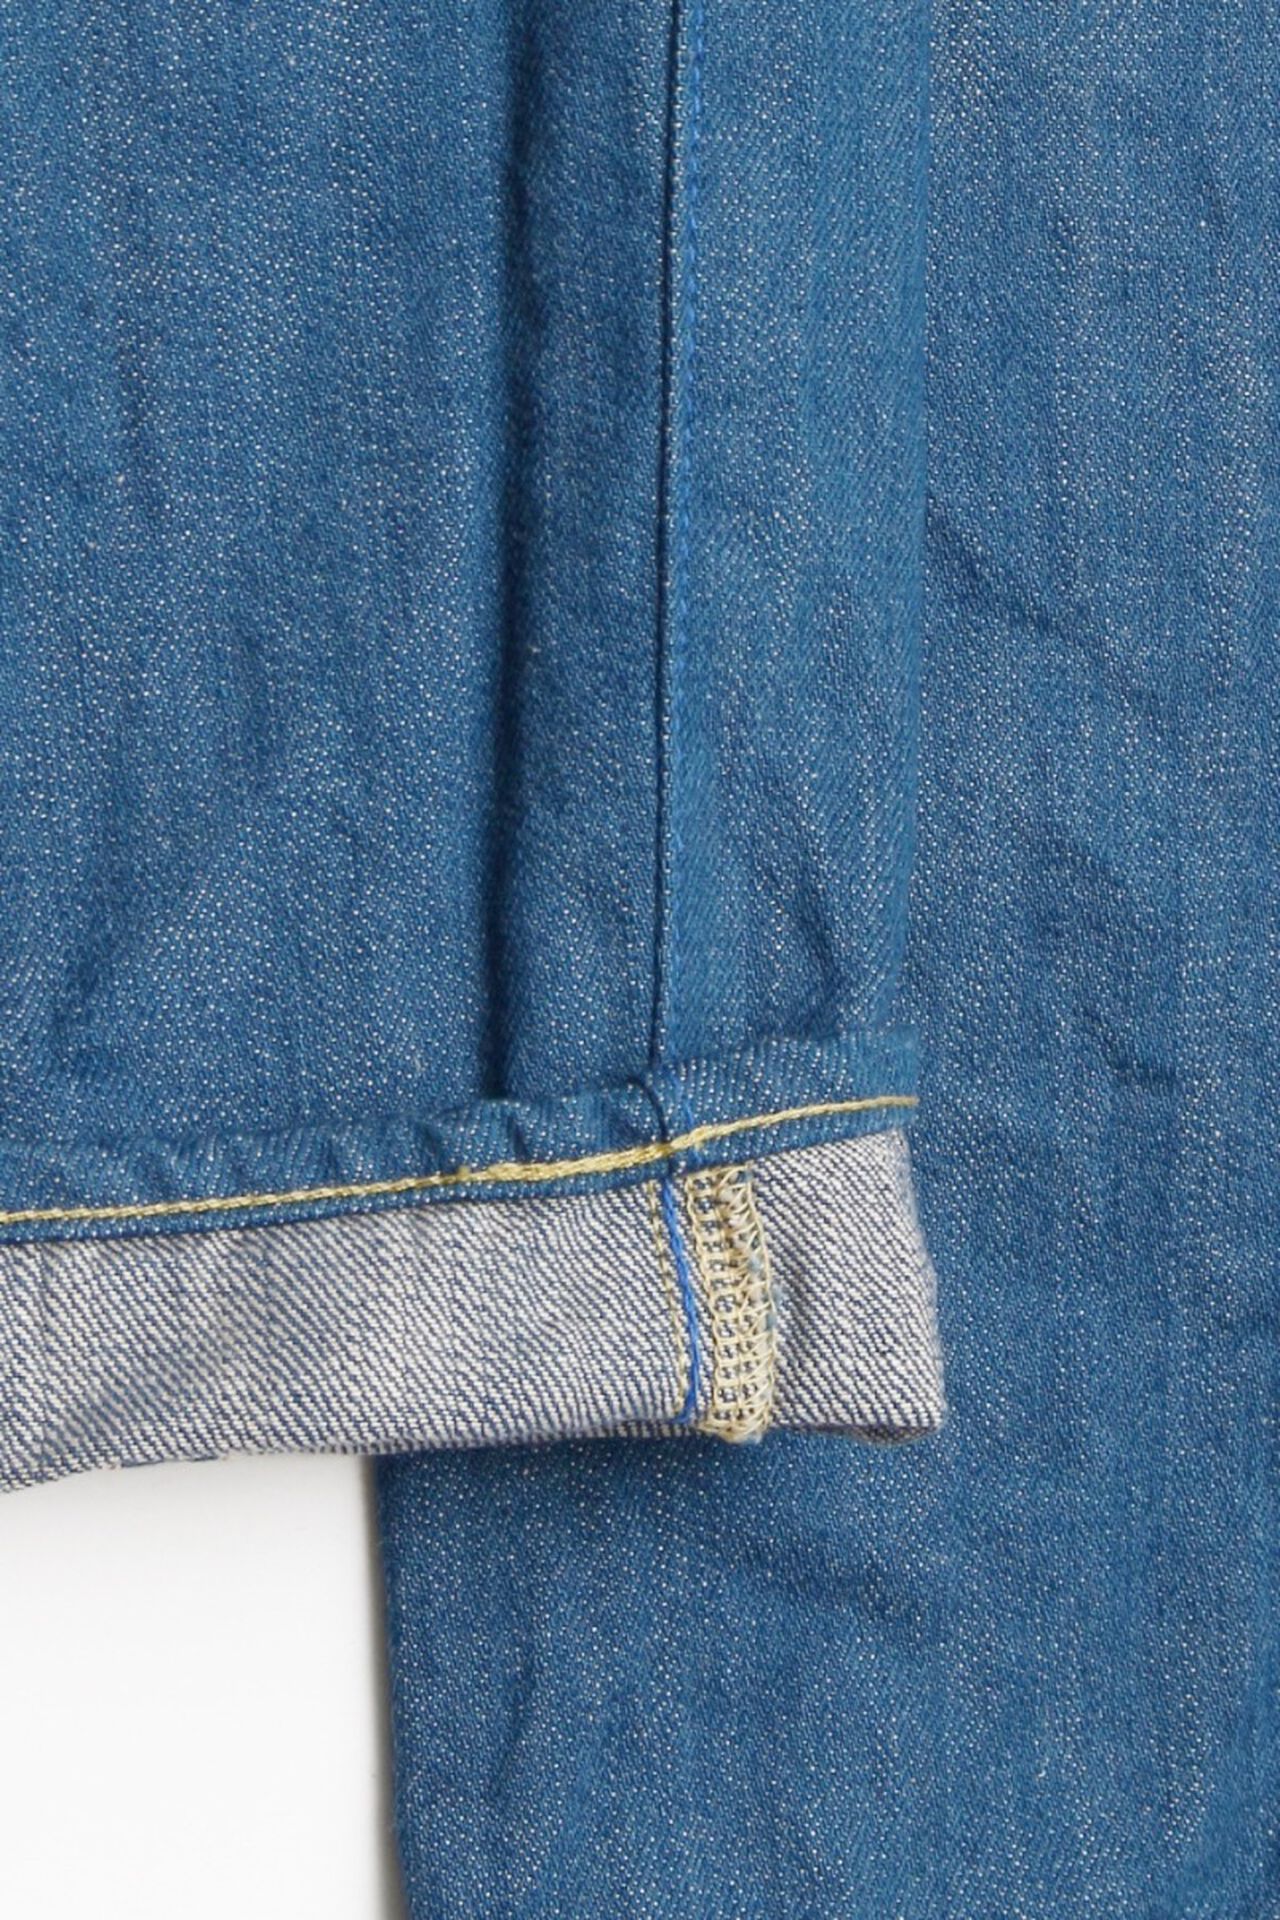 KHT 13oz "Kaze" Fade Blue High Tapered Jeans,, large image number 14